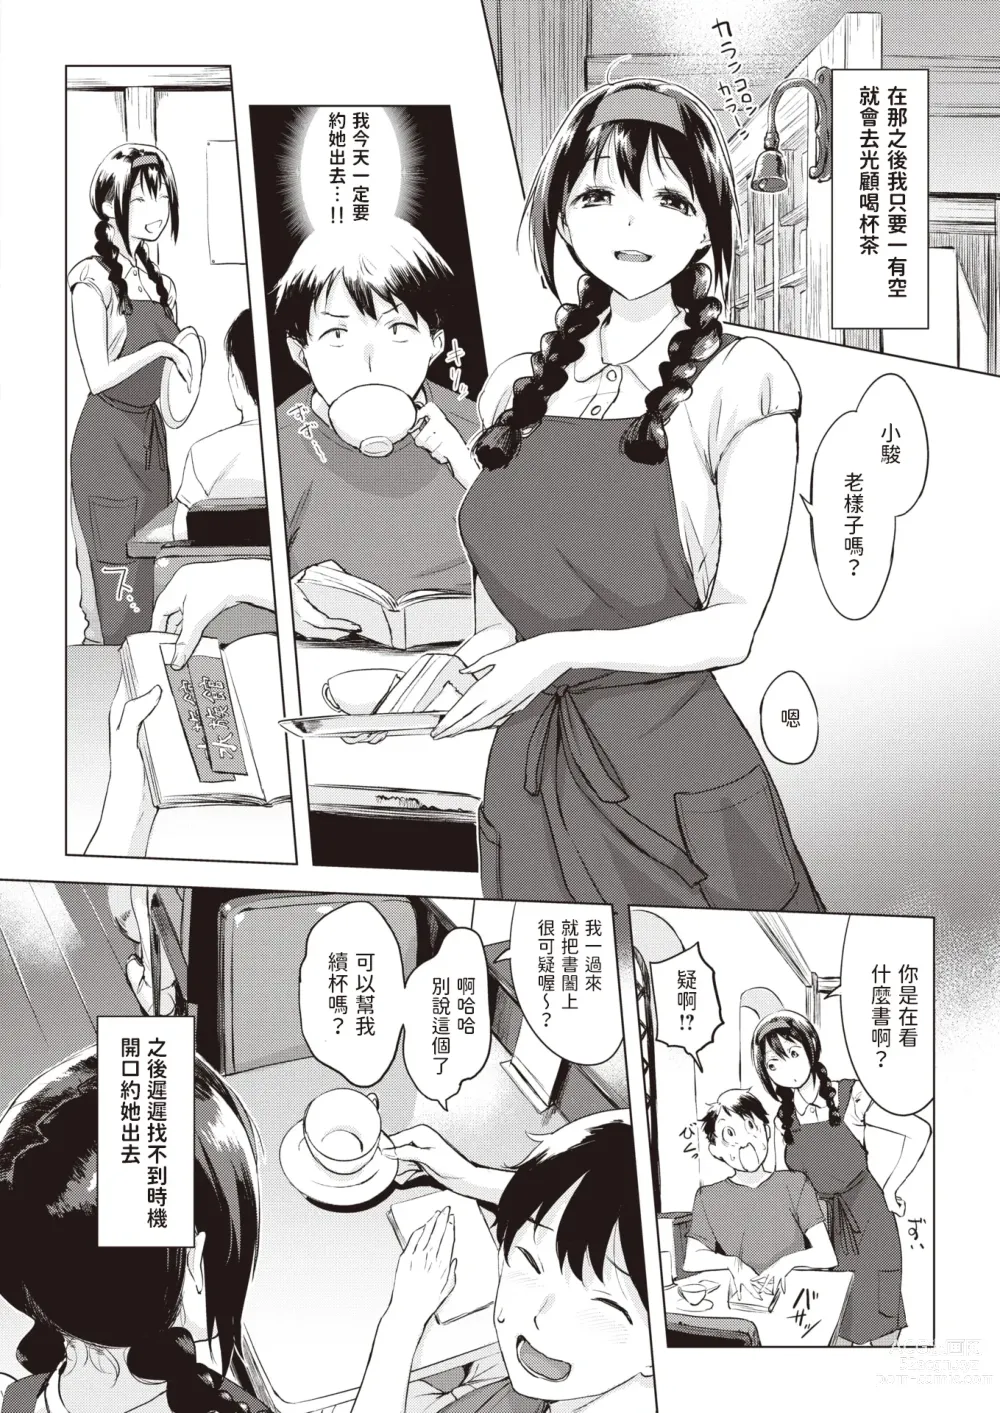 Page 6 of manga Iruka no Mobile